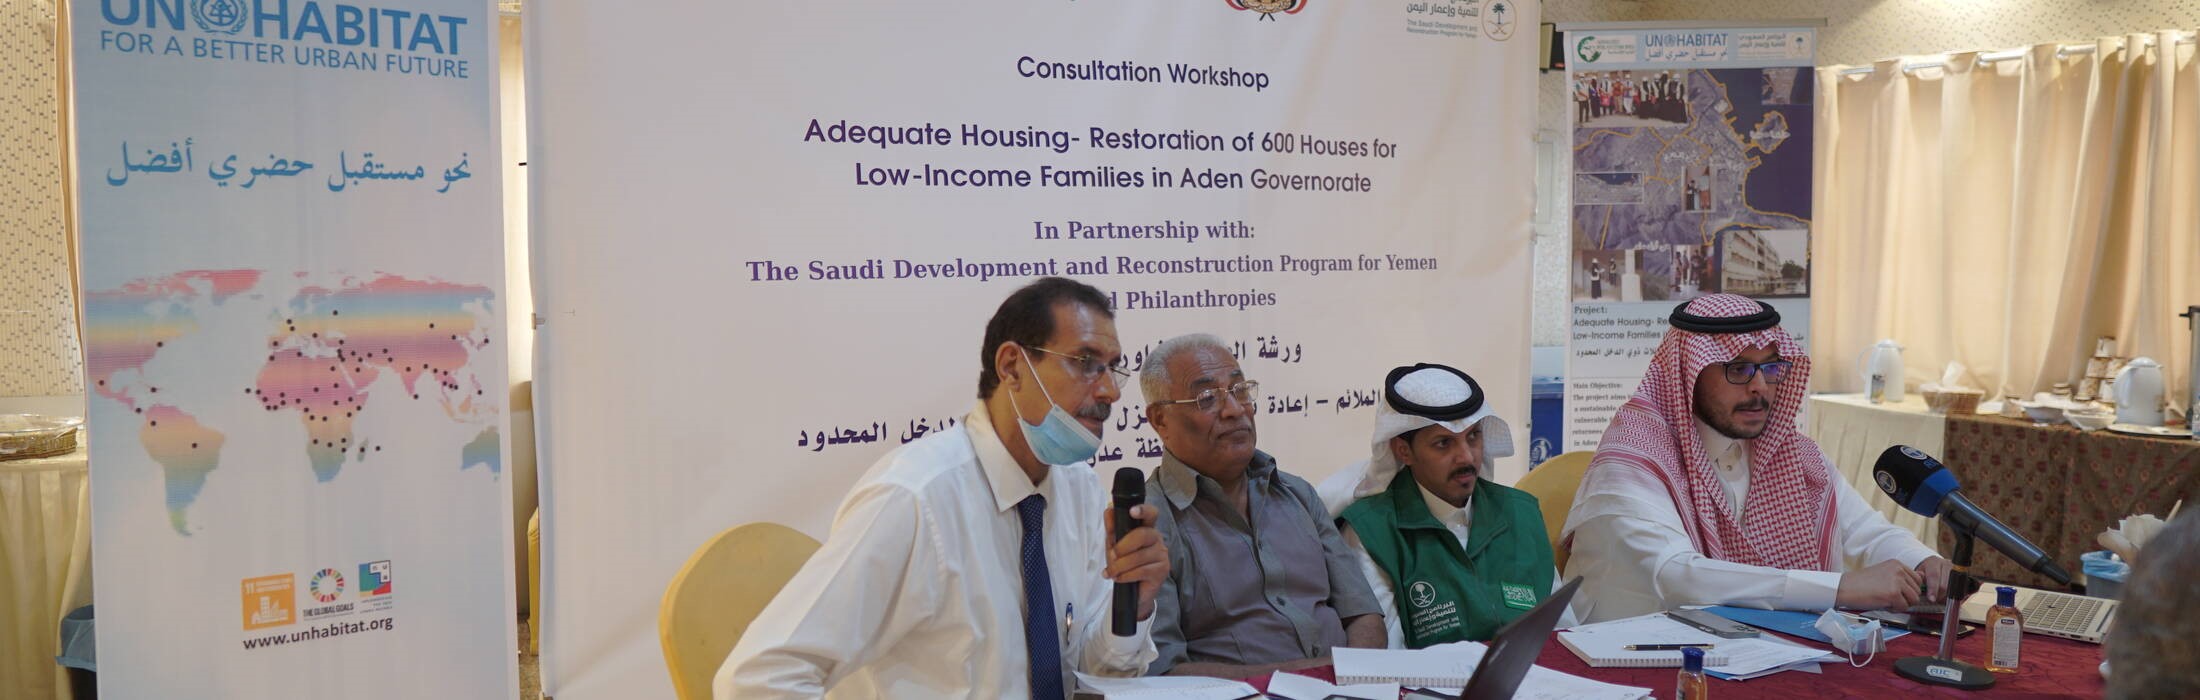 إطلاق مشروع الإسكان الملائم لإعادة تأهيل 600 منزل في عدن